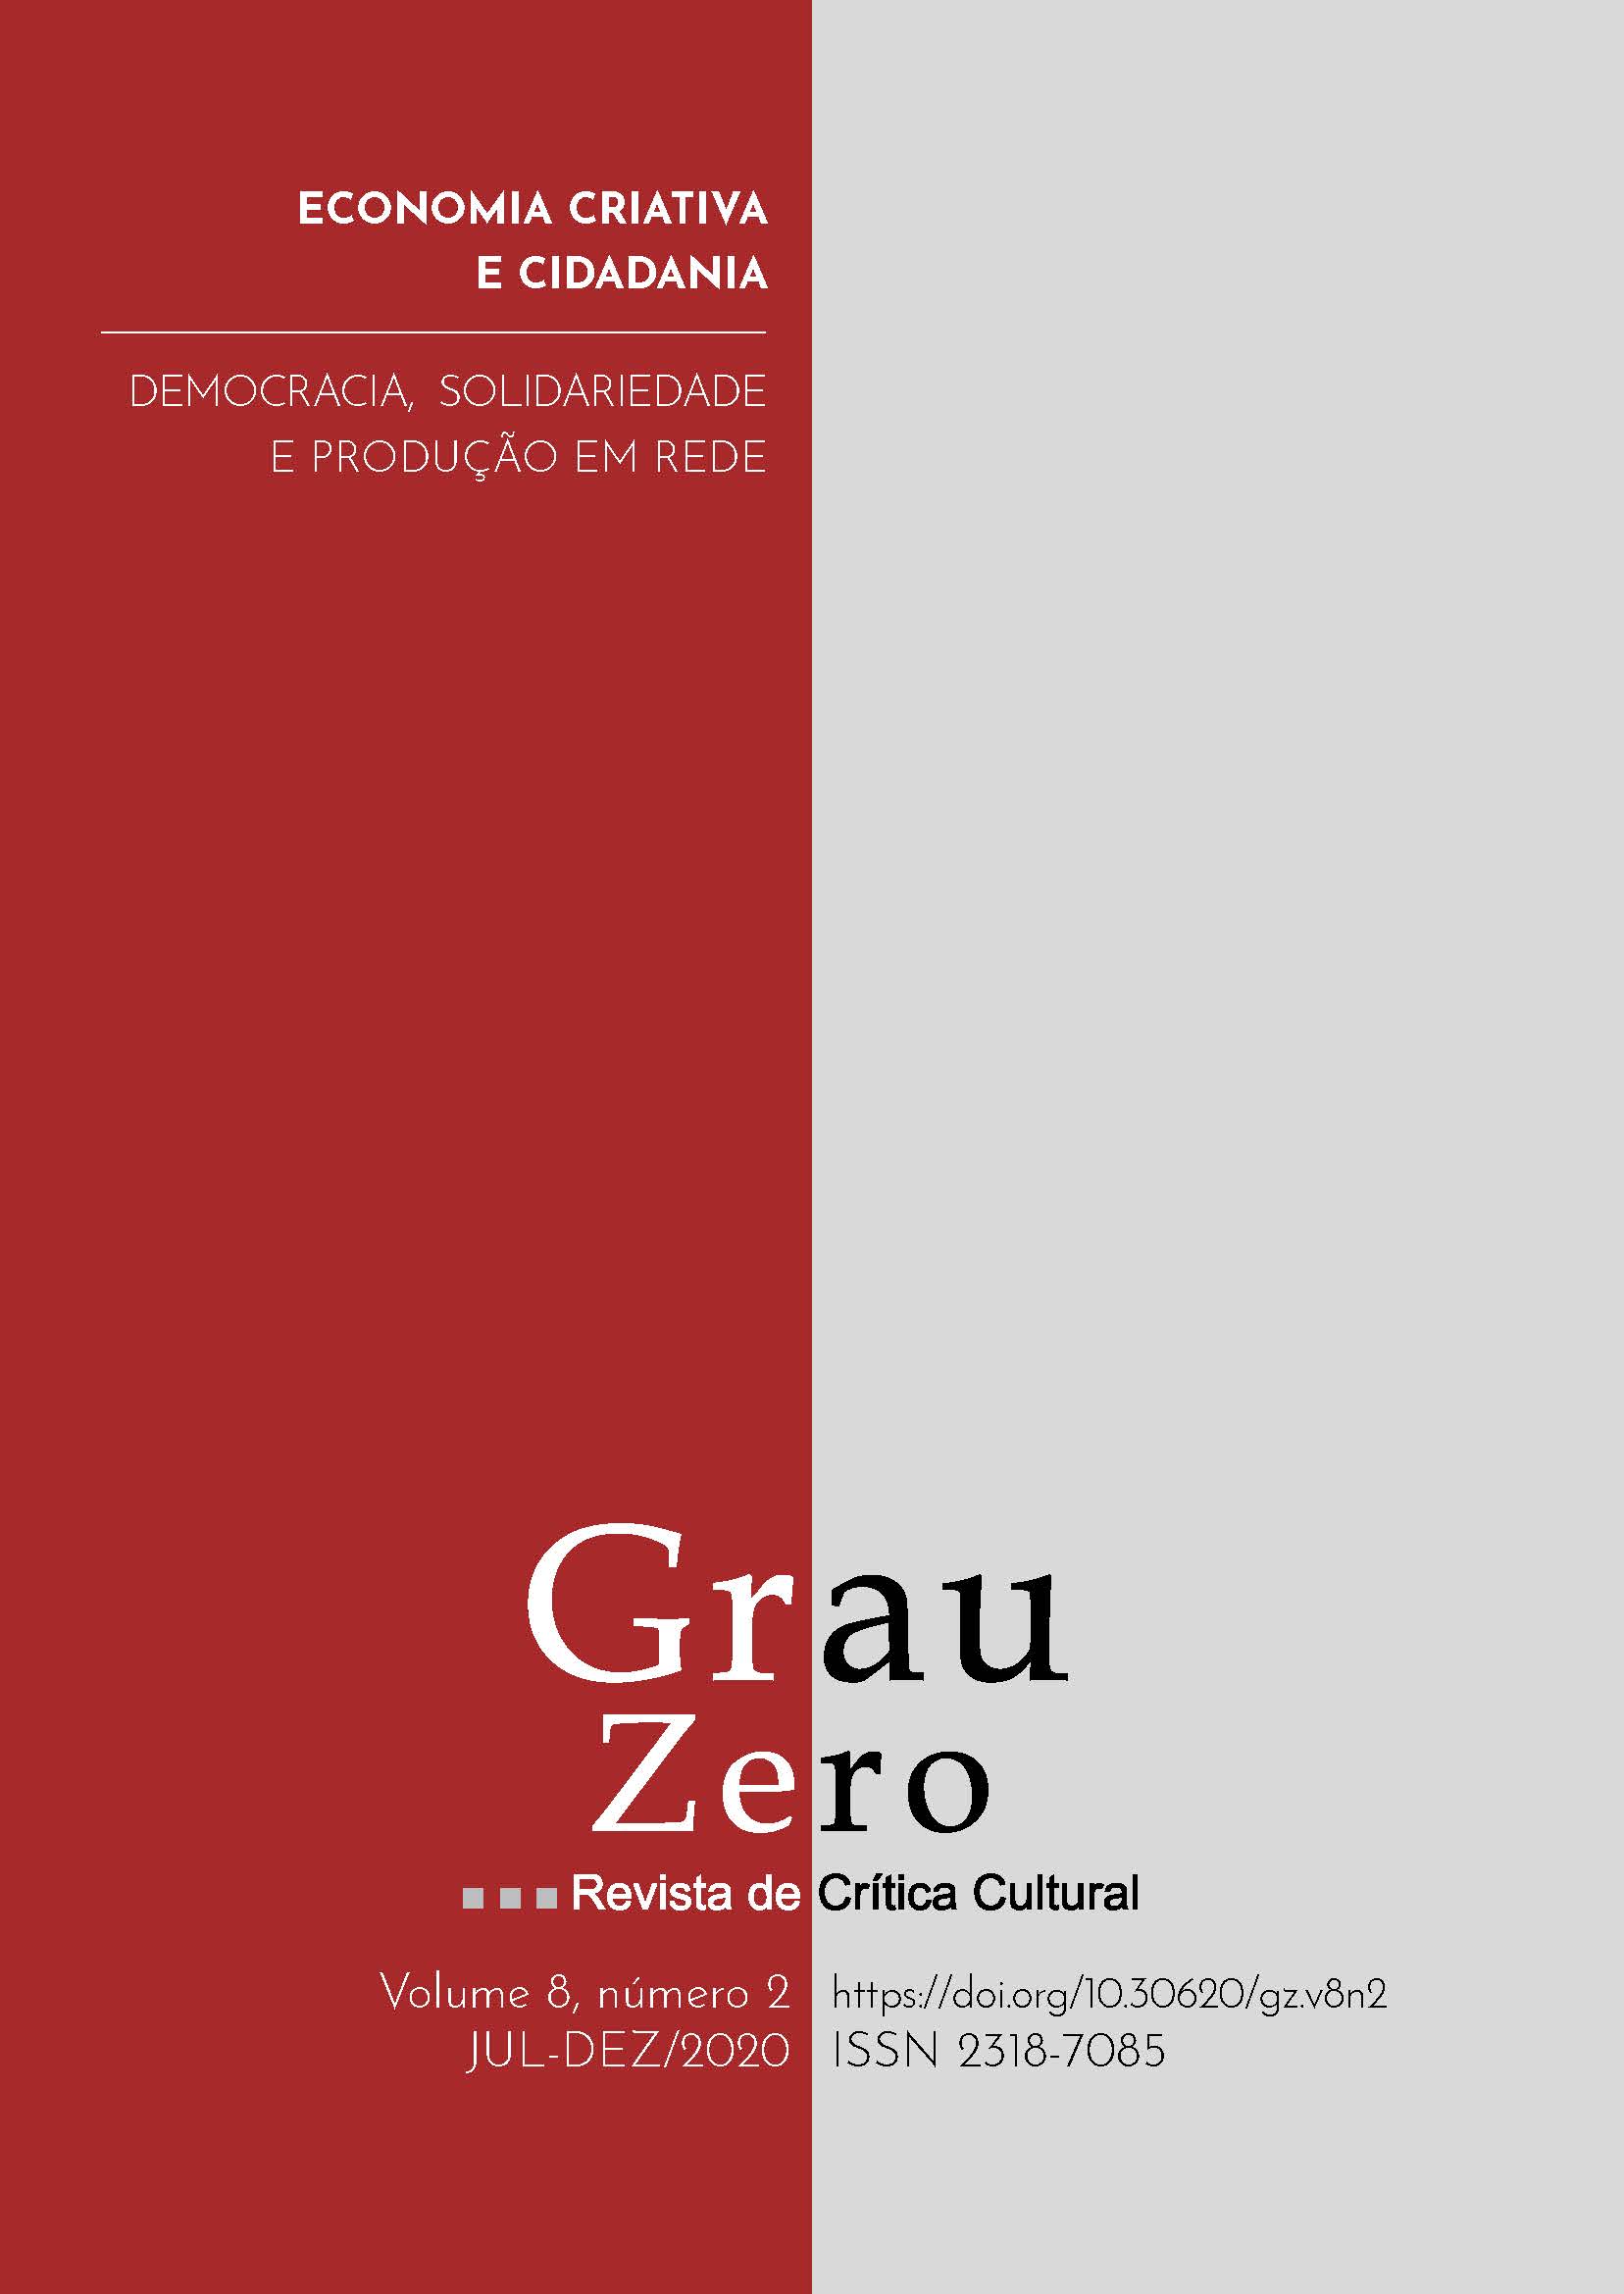 					Ver Vol. 8 Núm. 2 (2020): Economia criativa e cidadania: democracia, solidariedade e produção em rede
				